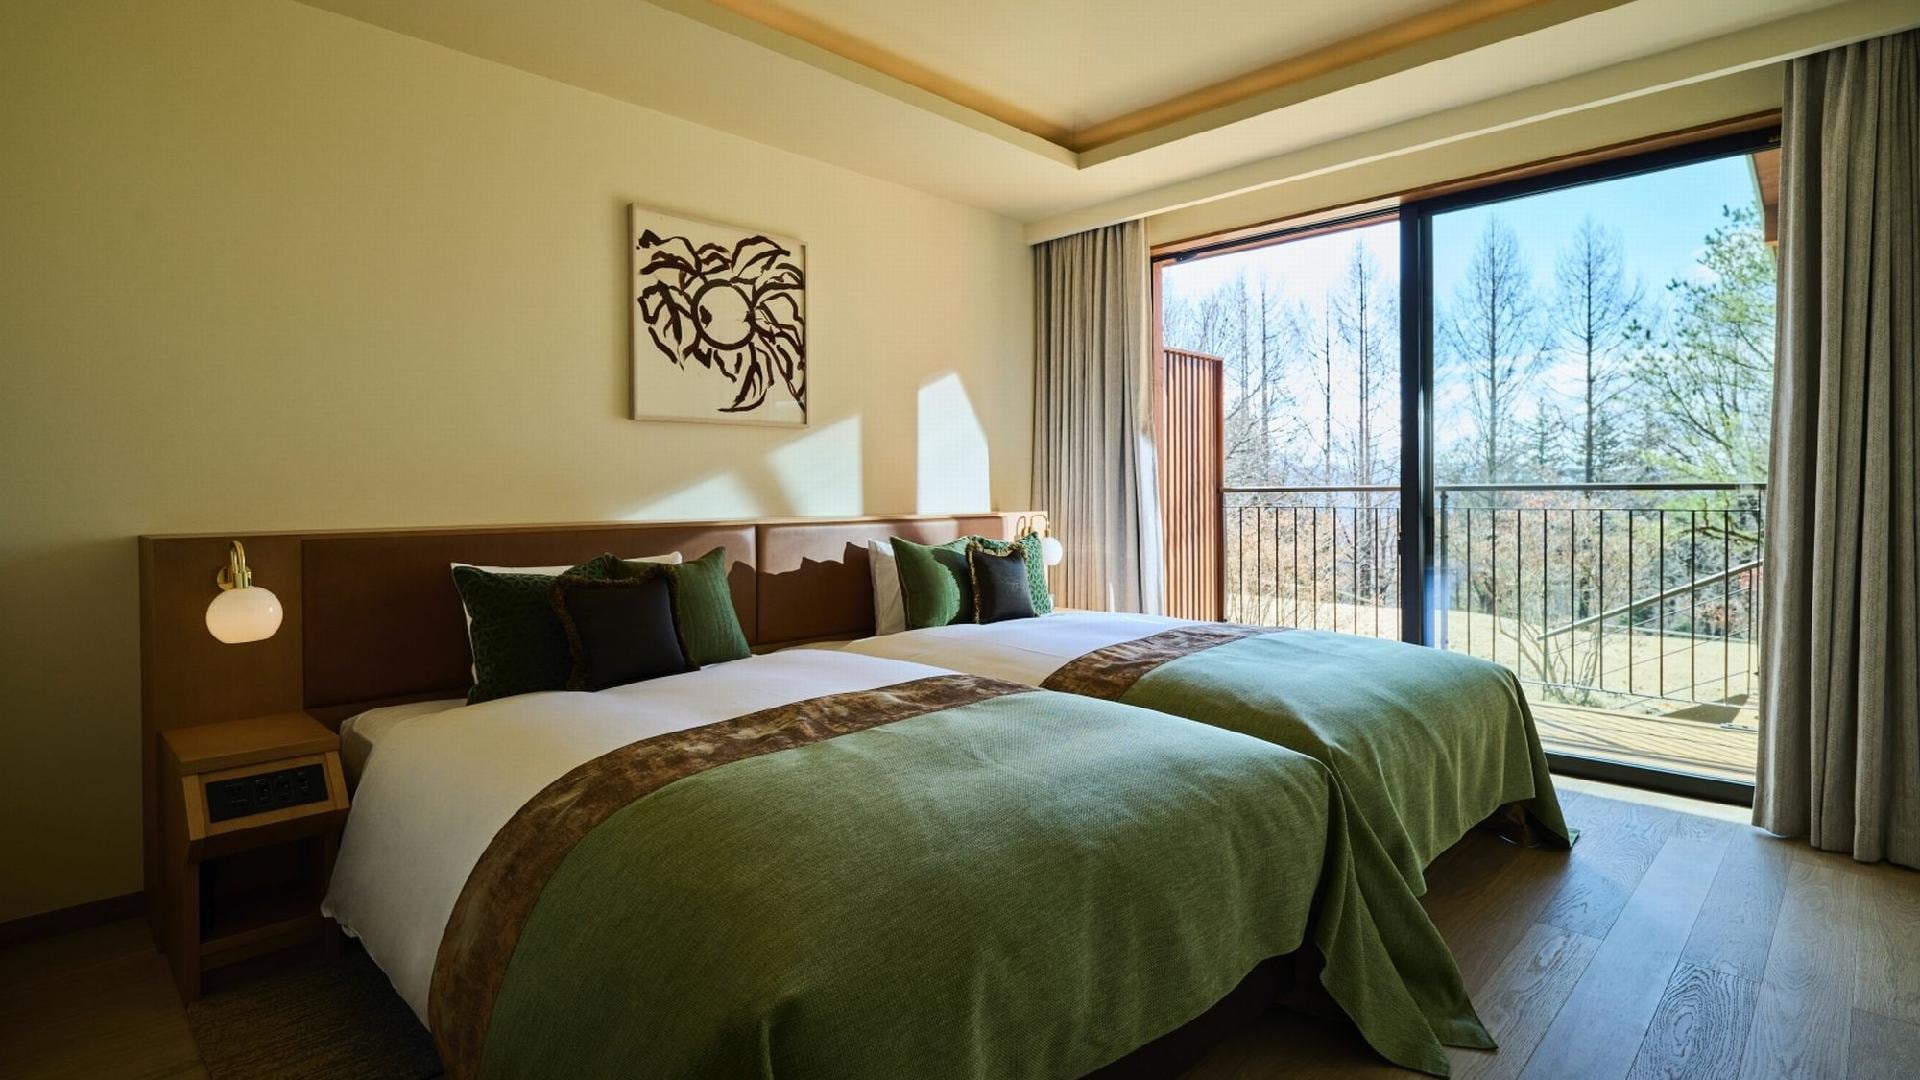 Villa Suite / Terrace Villa Suite: Bedroom